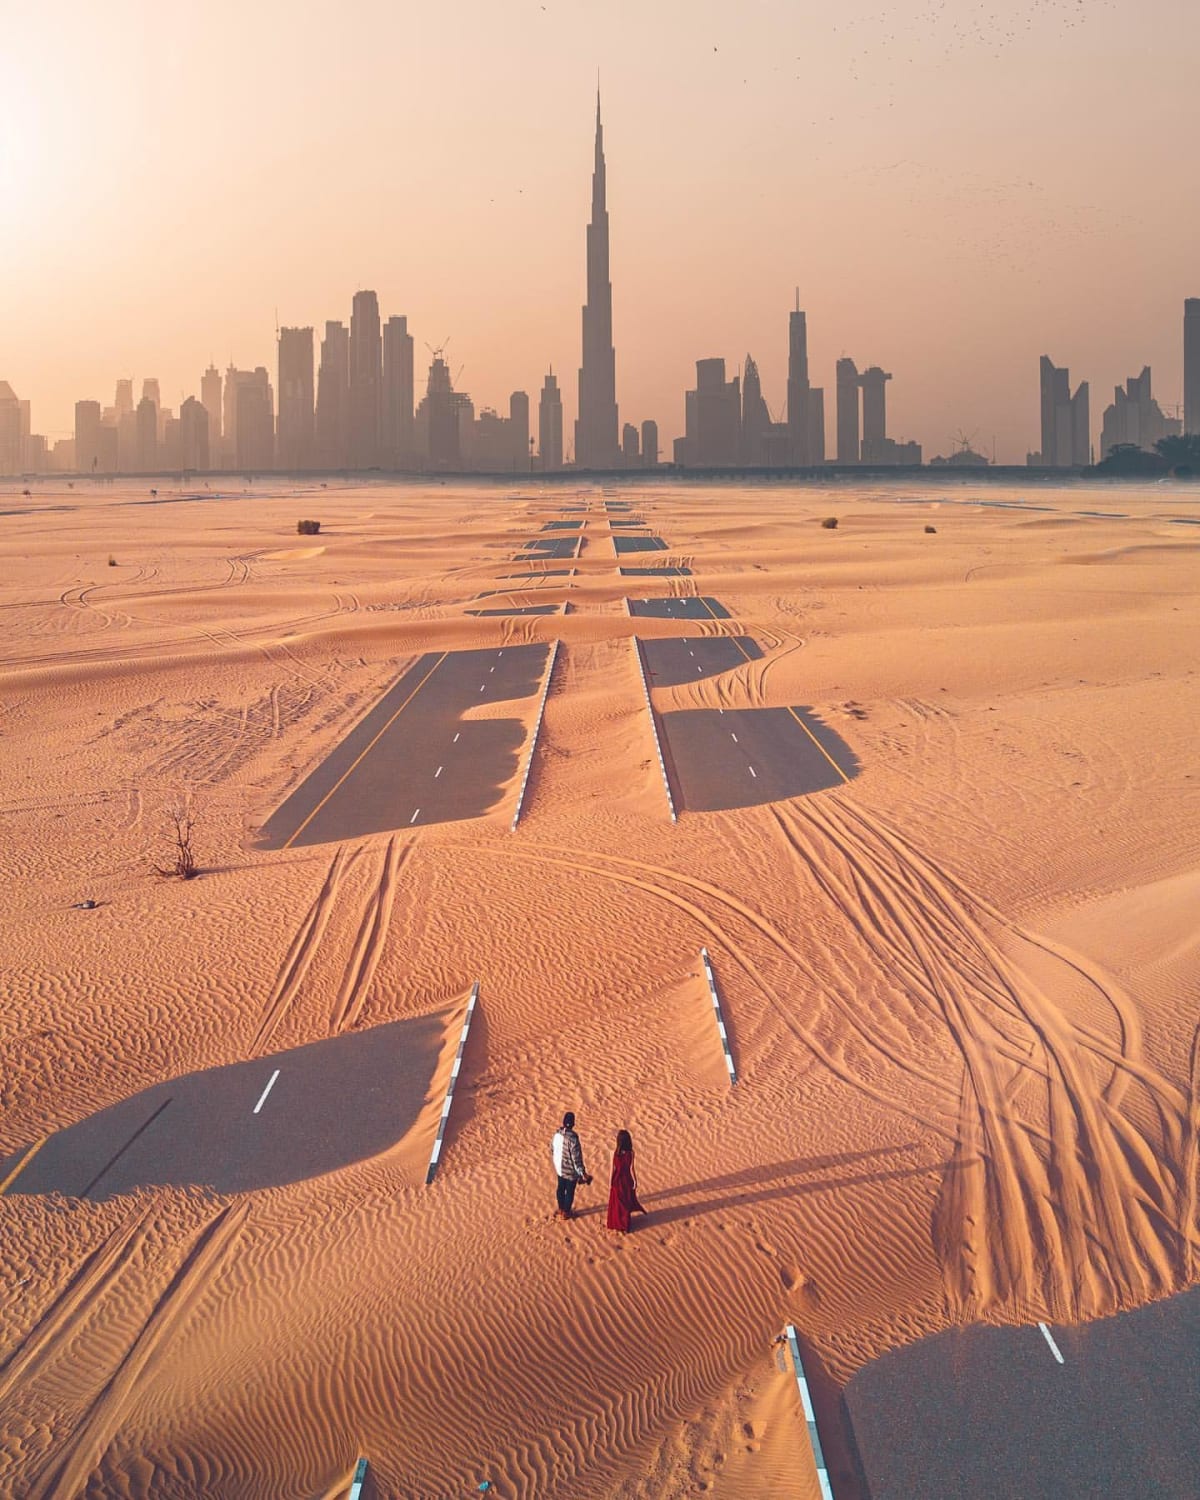 Dubai after a sandstorm